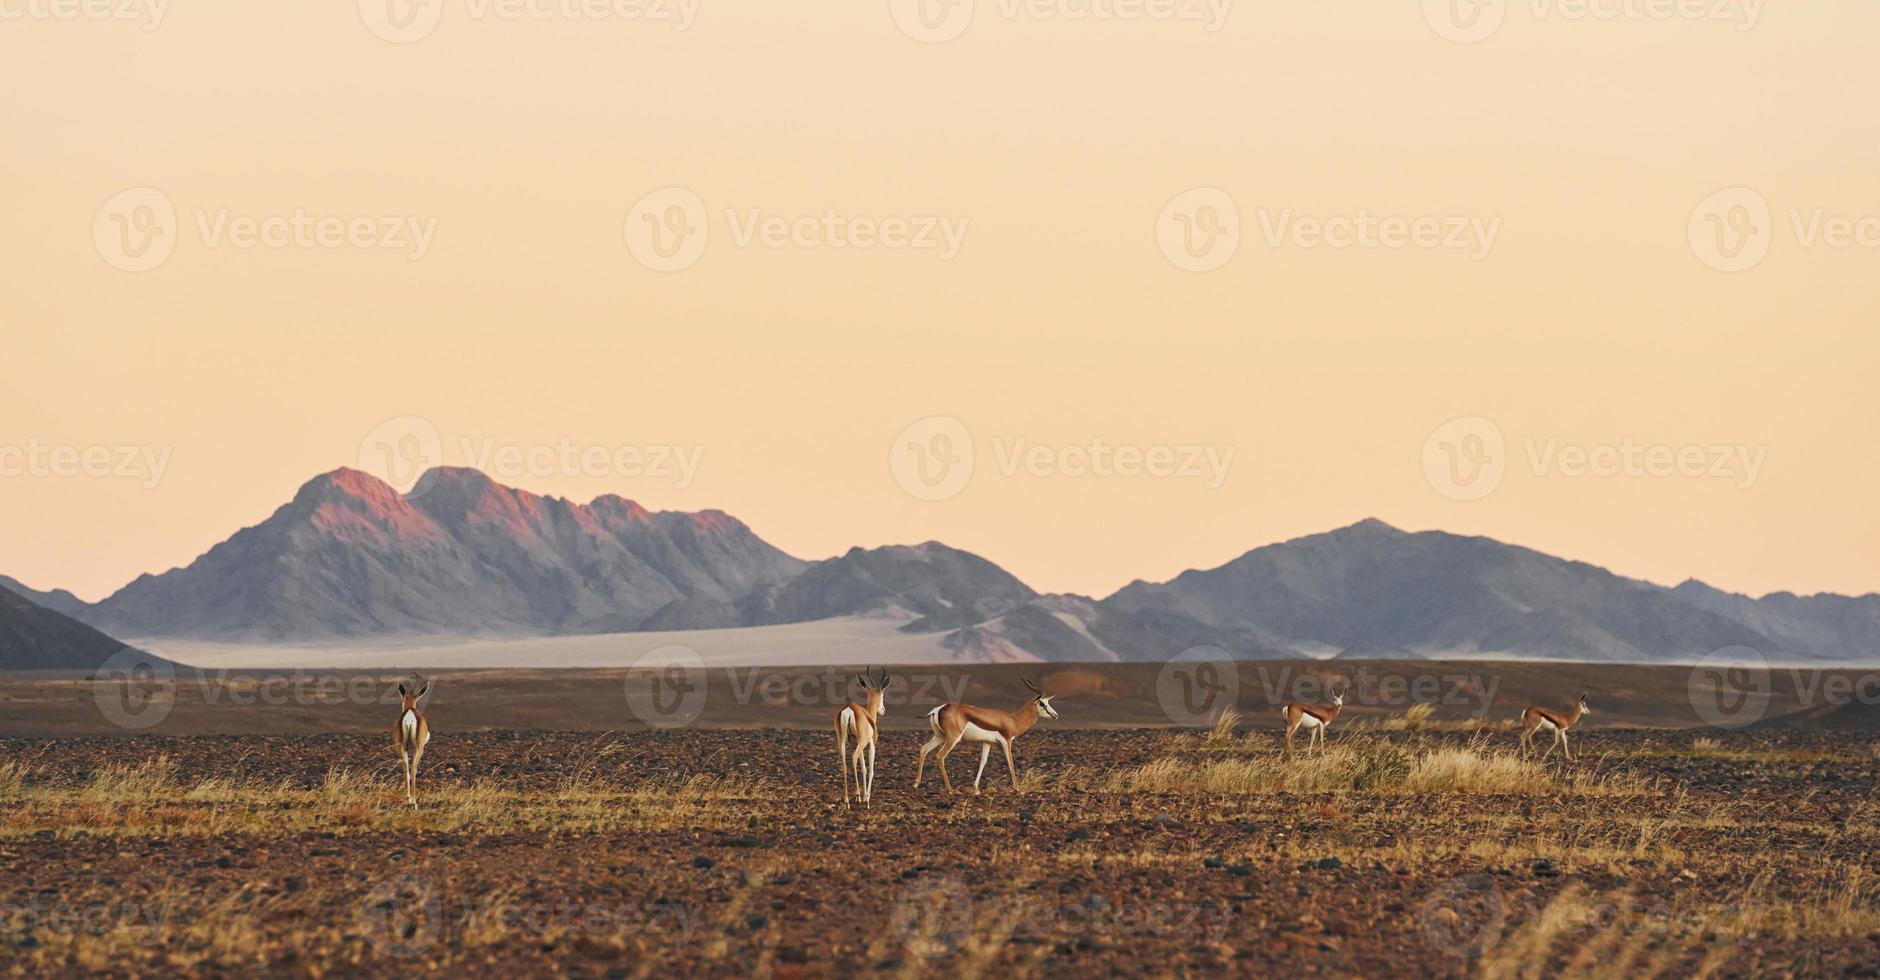 Berge ist weit weg in der Ferne. majestätischer blick auf erstaunliche landschaften in der afrikanischen wüste foto